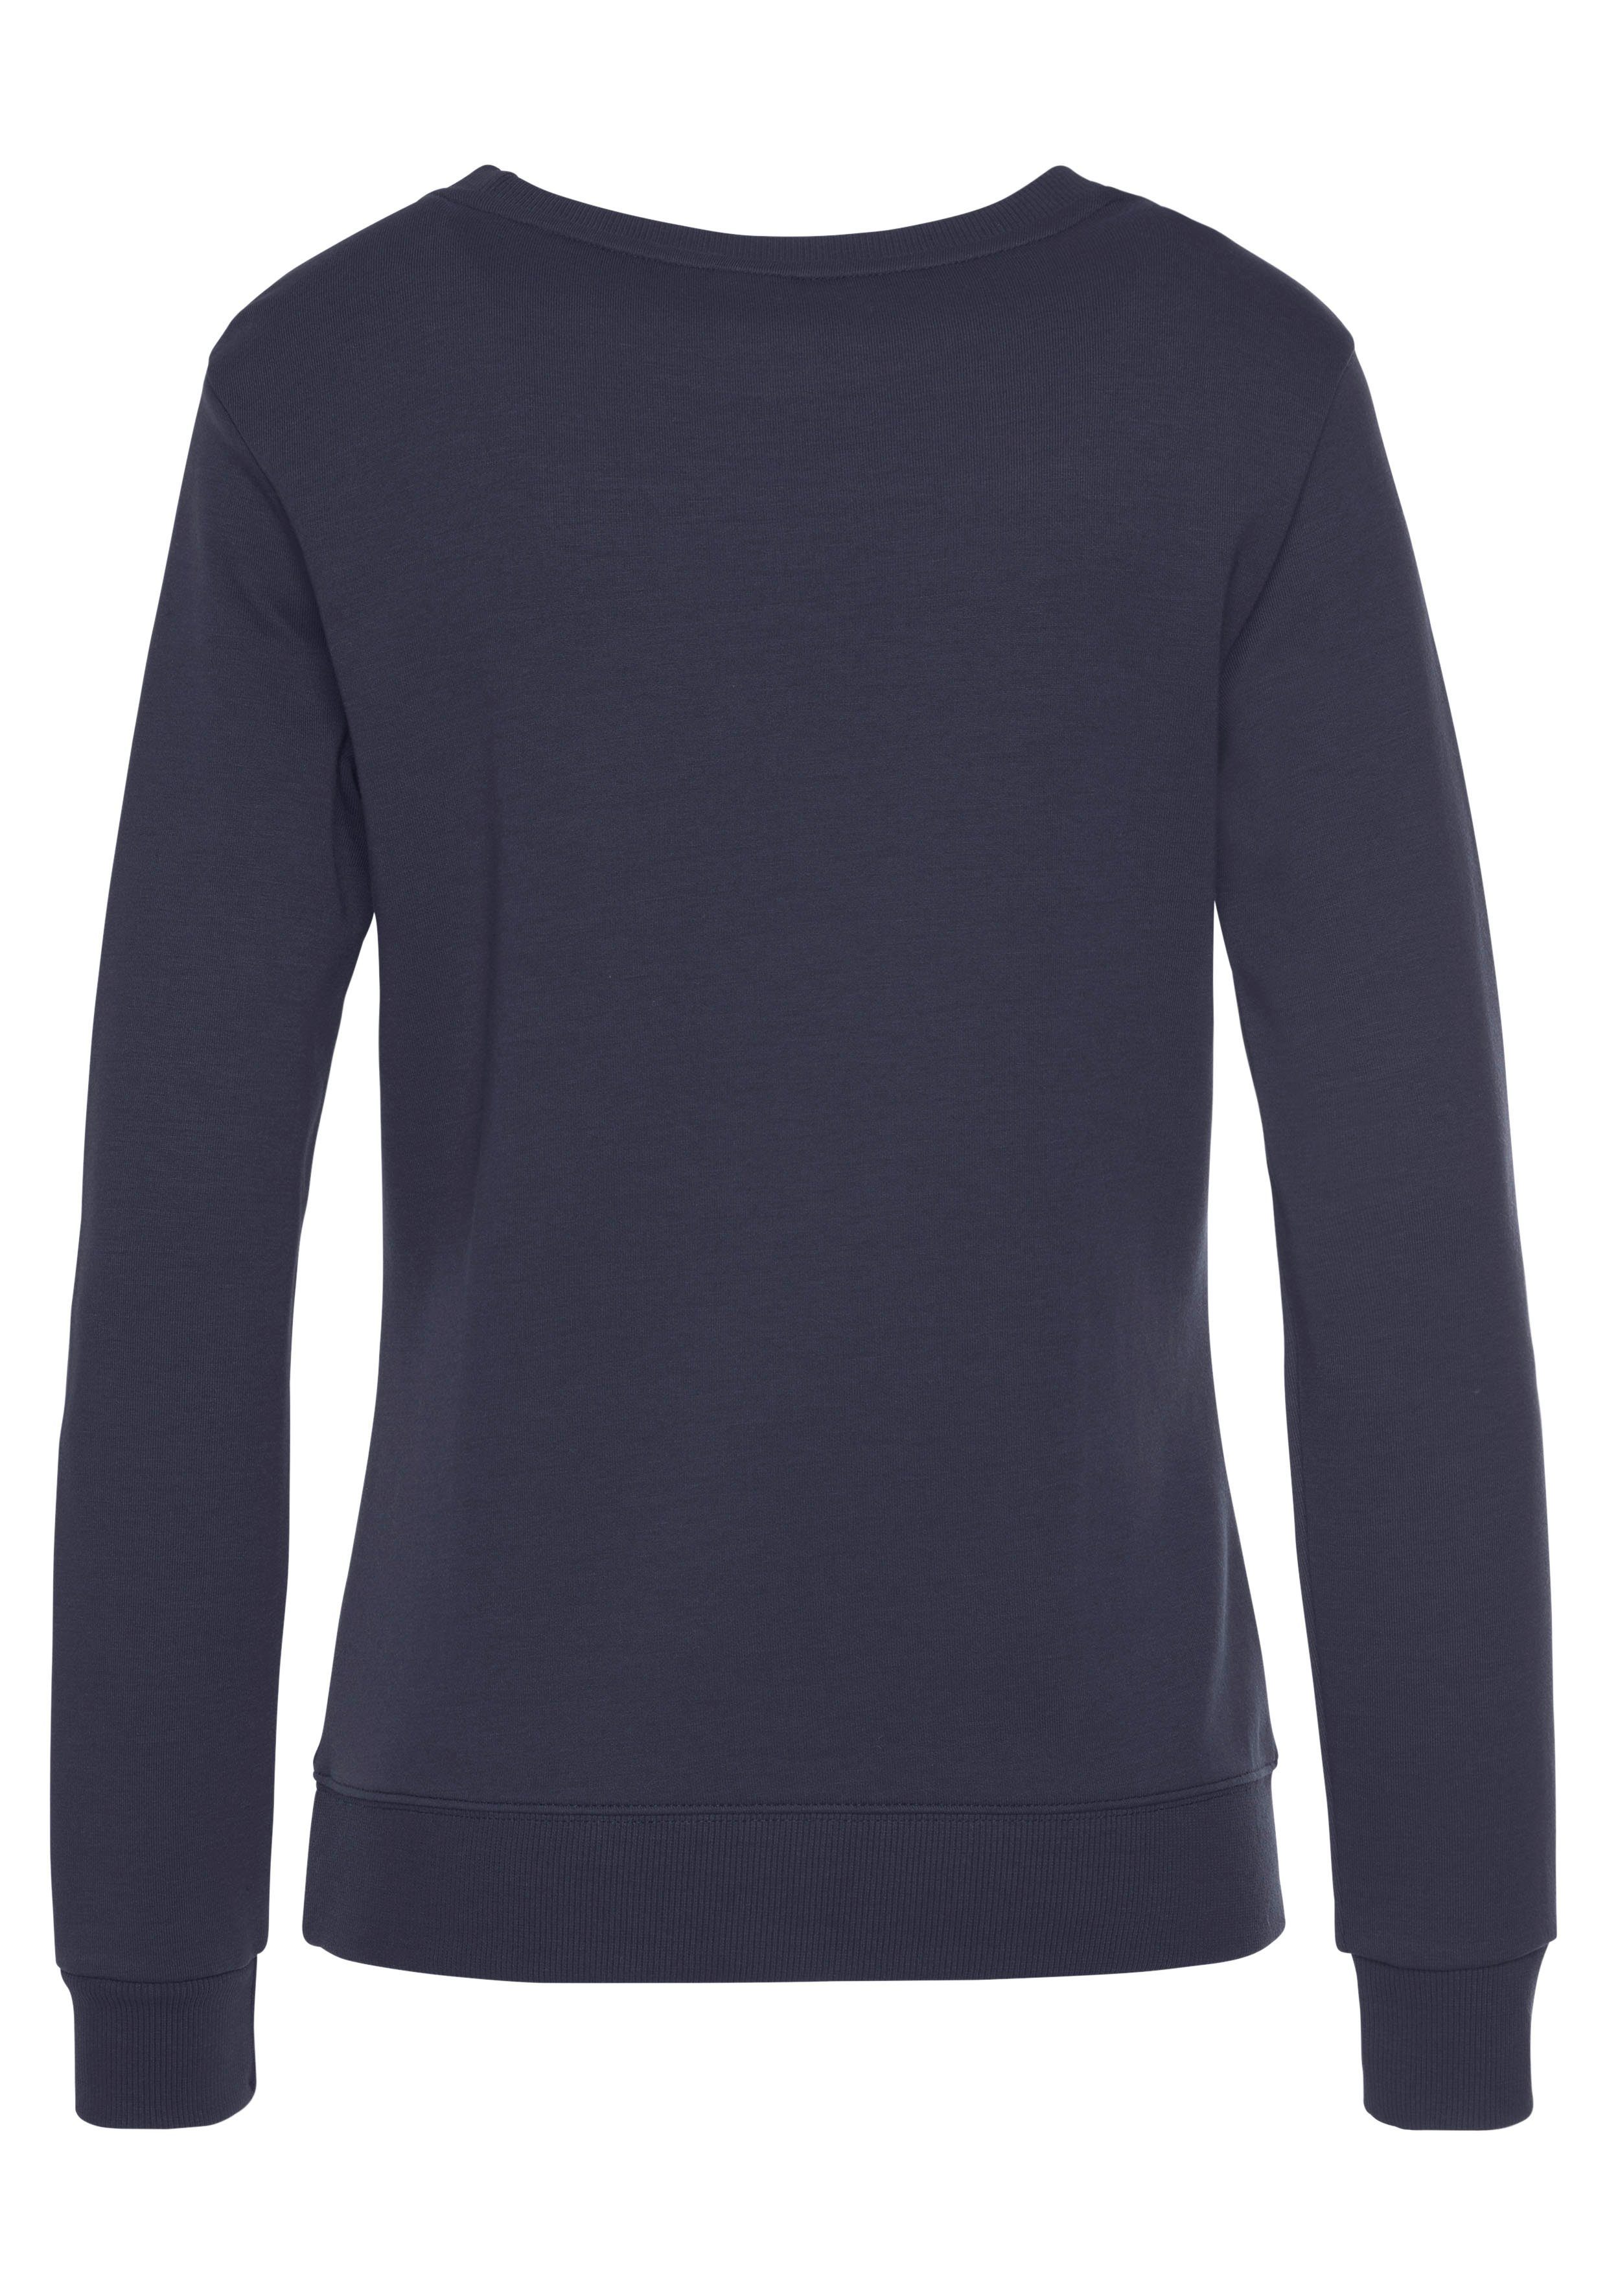 KangaROOS Sweatshirt mit Kontrastfarbenem Logodruck, Loungeanzug marine